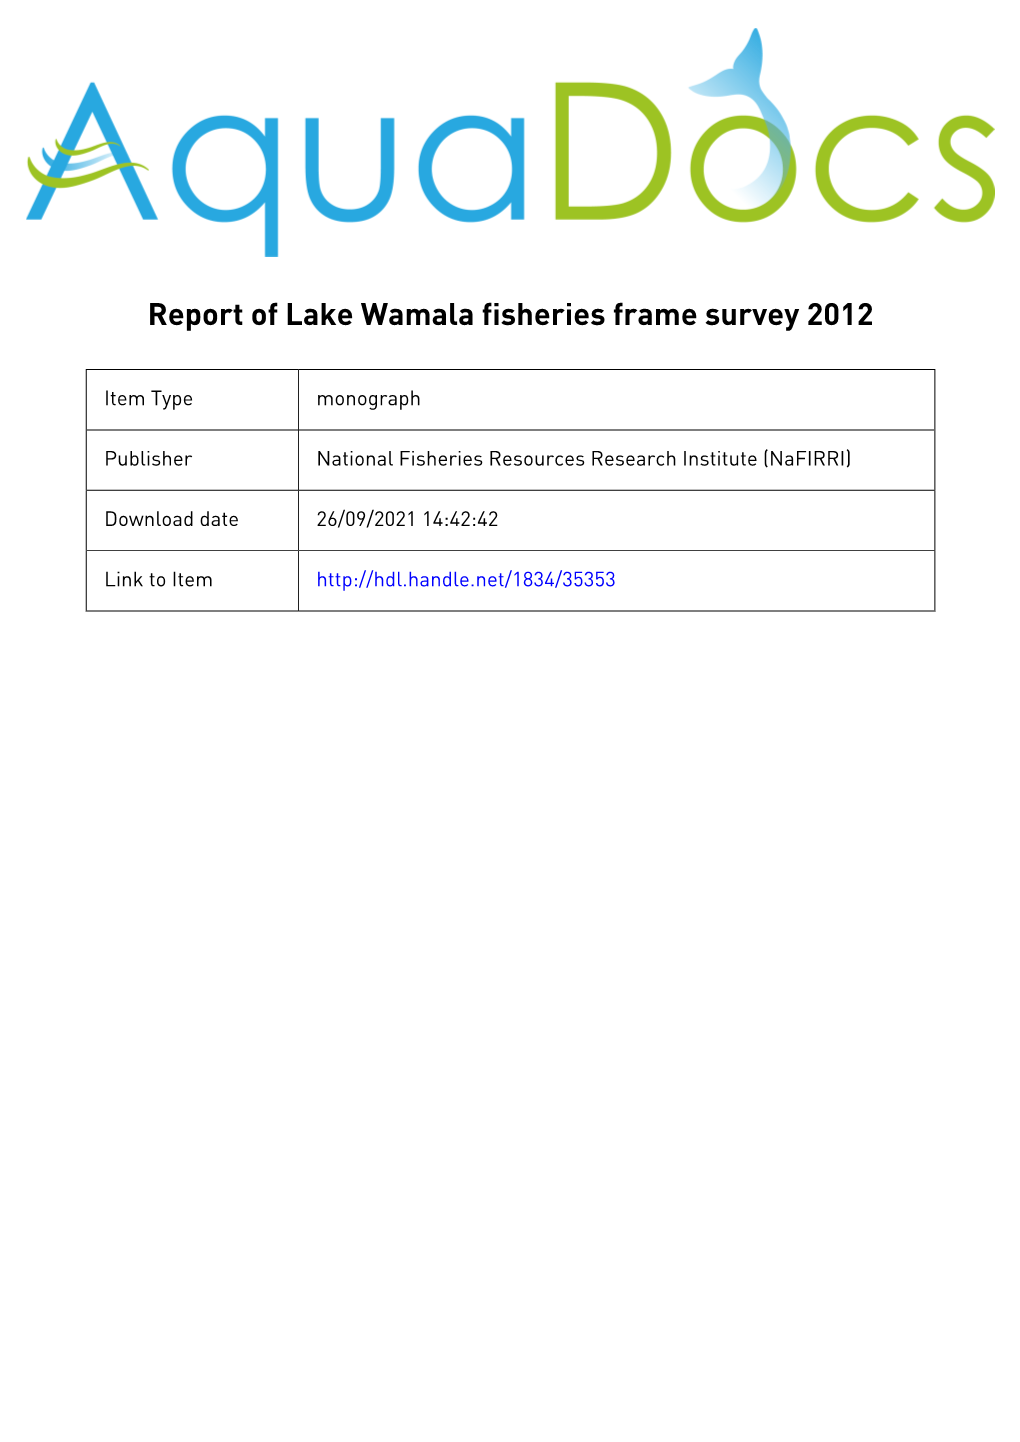 Draft Report on Lake Wamala Fisheries Frame Survey 2000